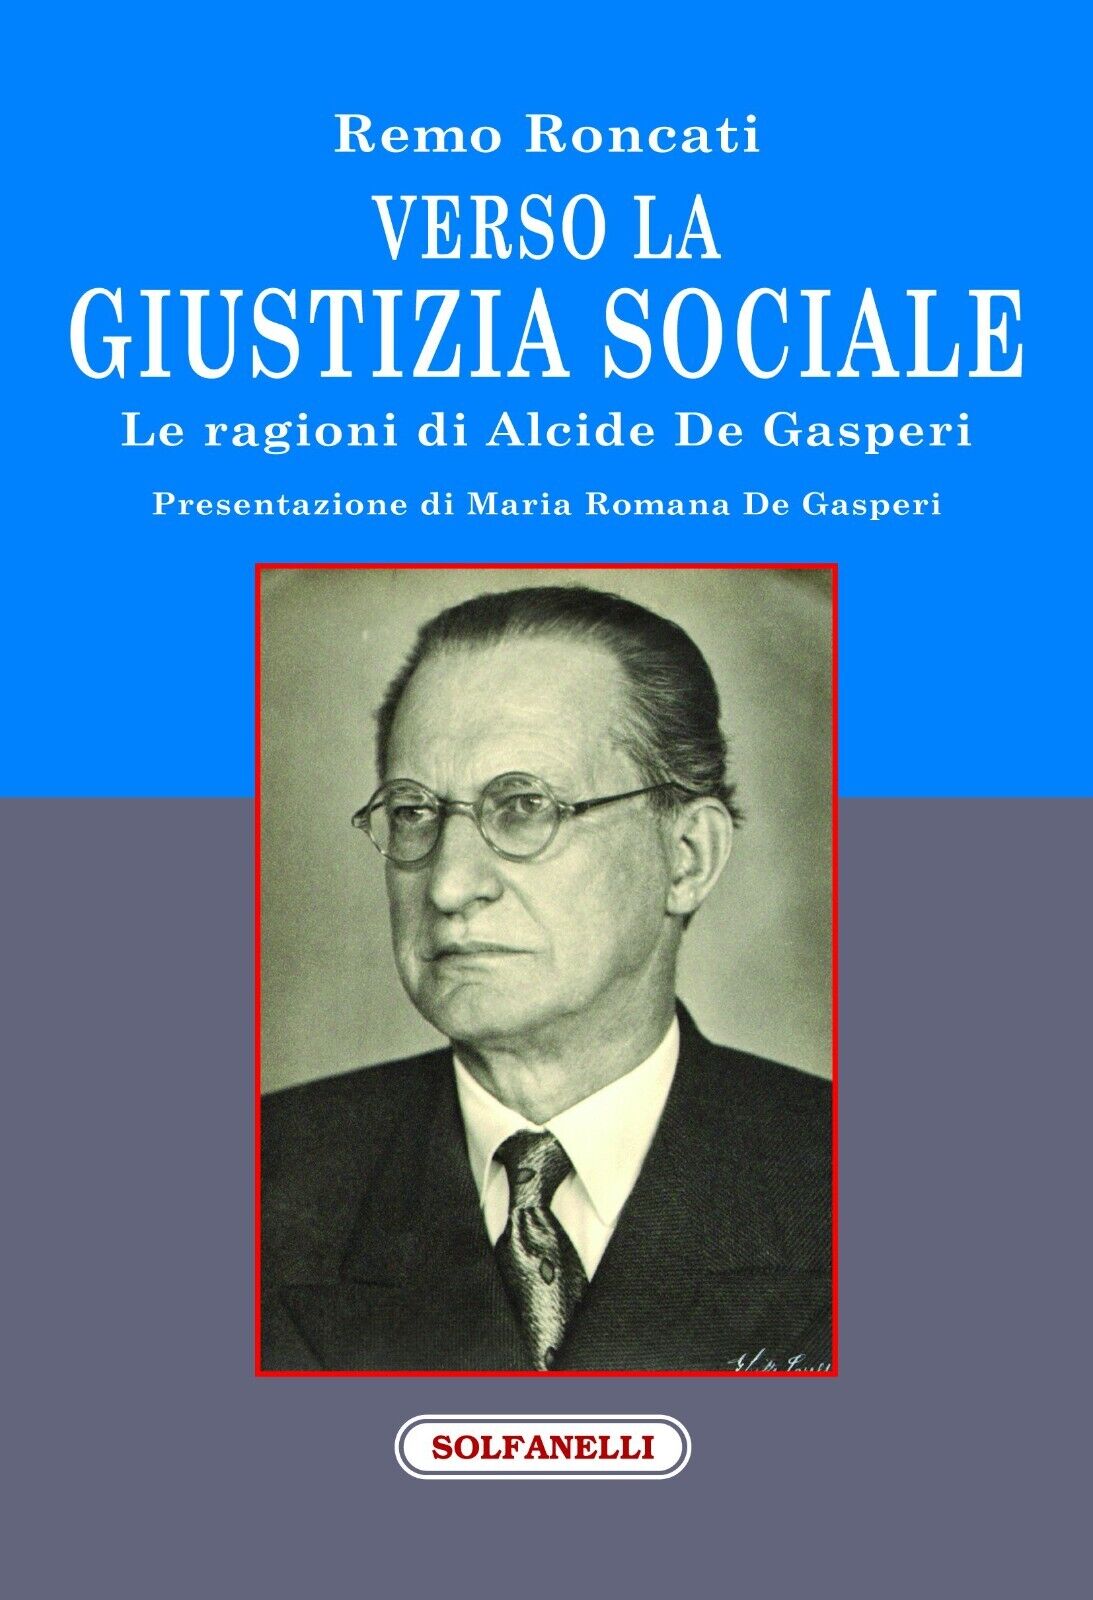 Verso la giustizia sociale. Le ragioni di Alcide De Gasperi di Remo Roncati, 2